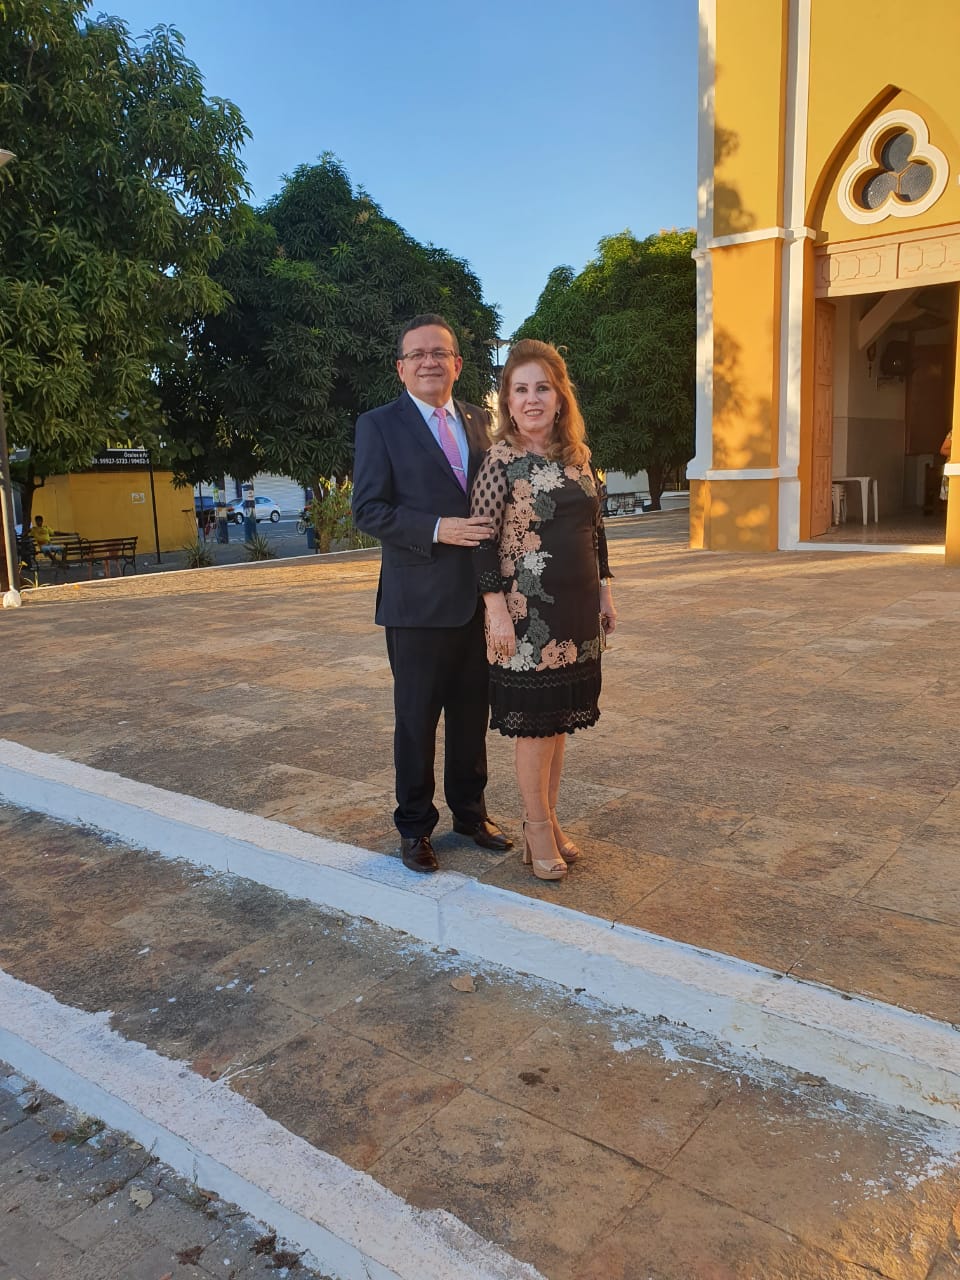 Sebastião Martins e dona Solange Ribeiro em frente à Igreja de Floriano